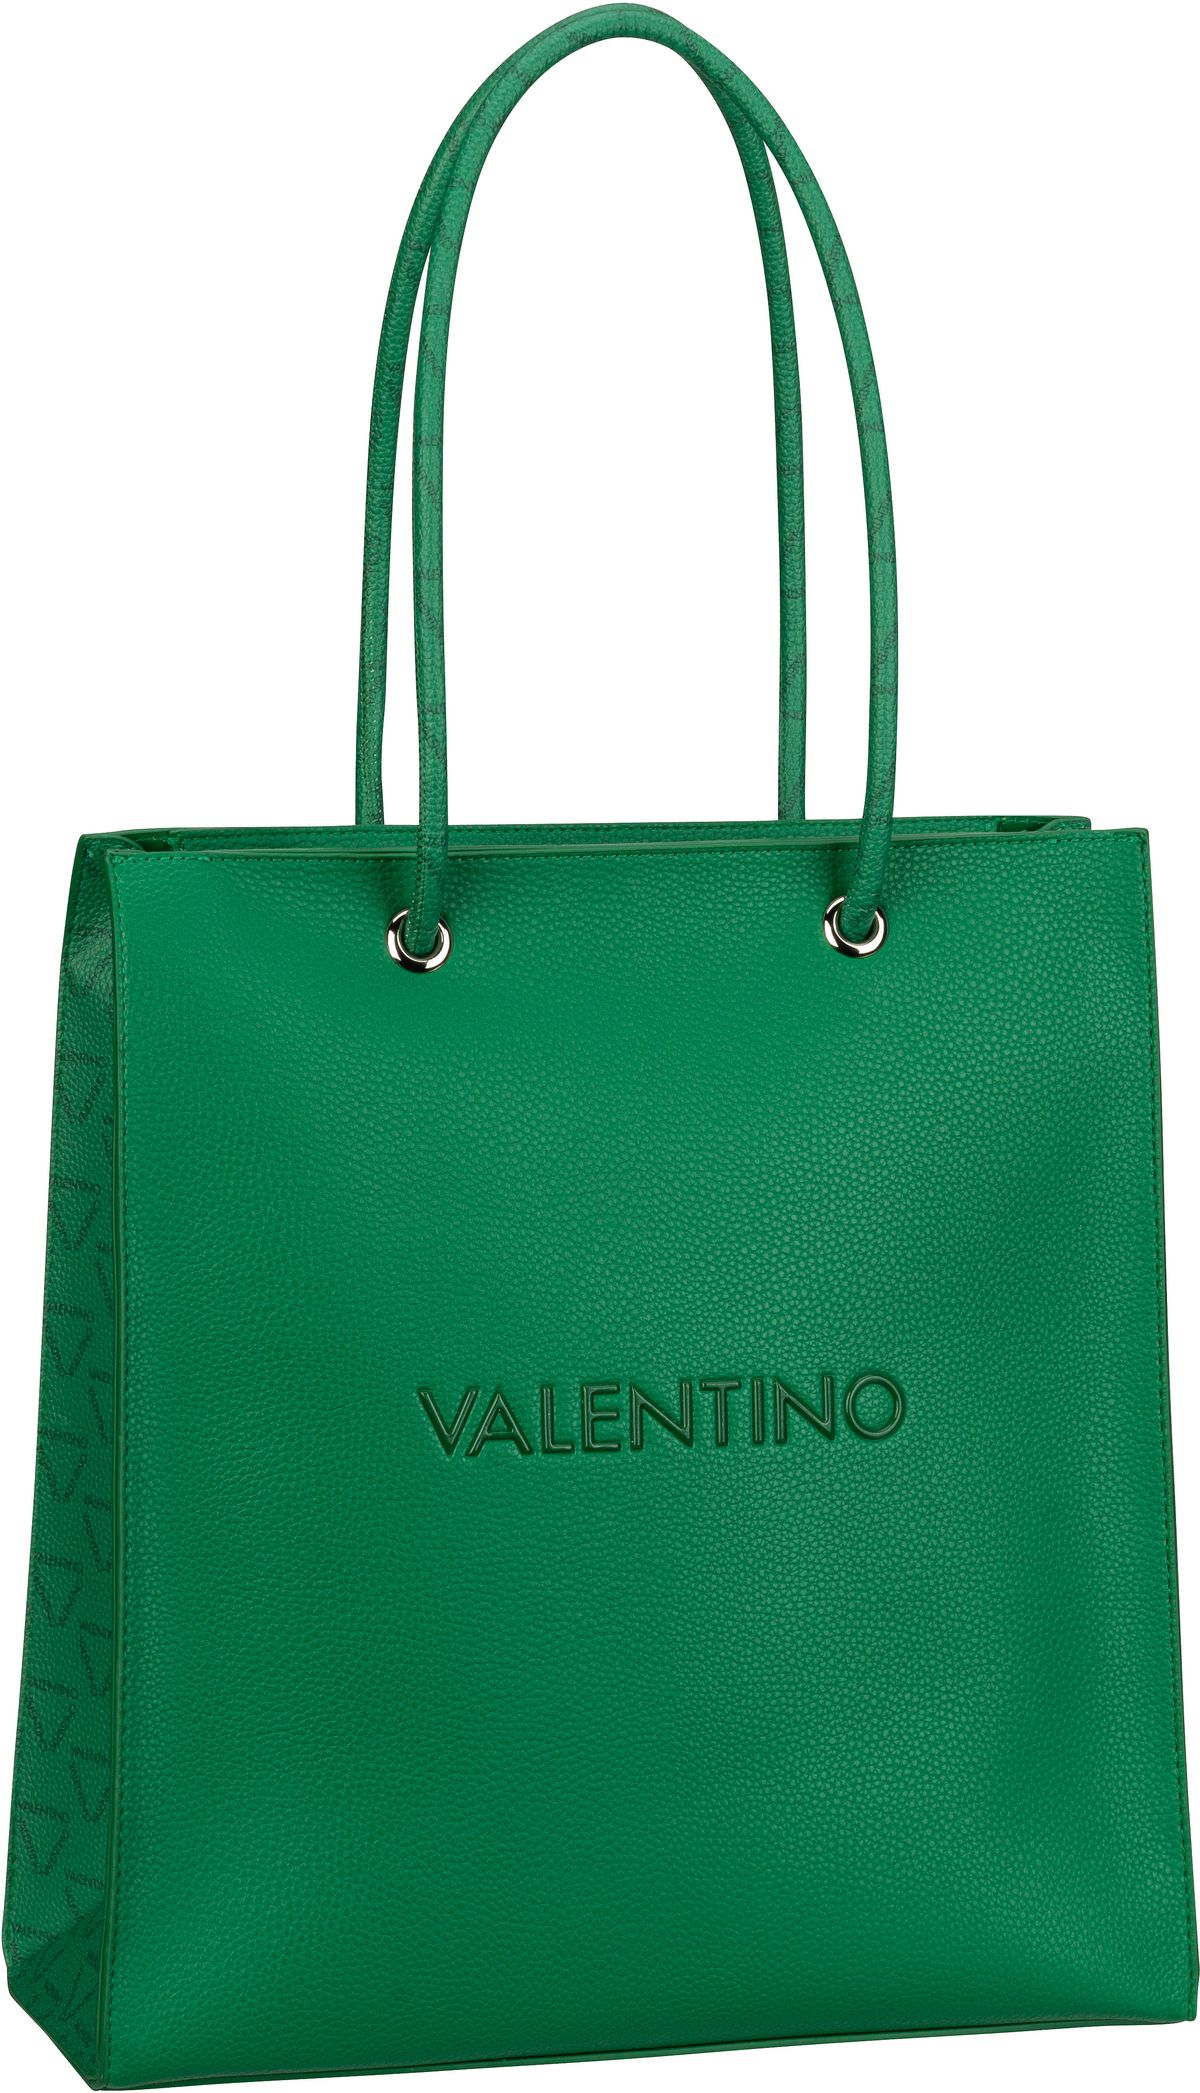 Valentino Jelly Shopping W01 - Verde/Multicolor